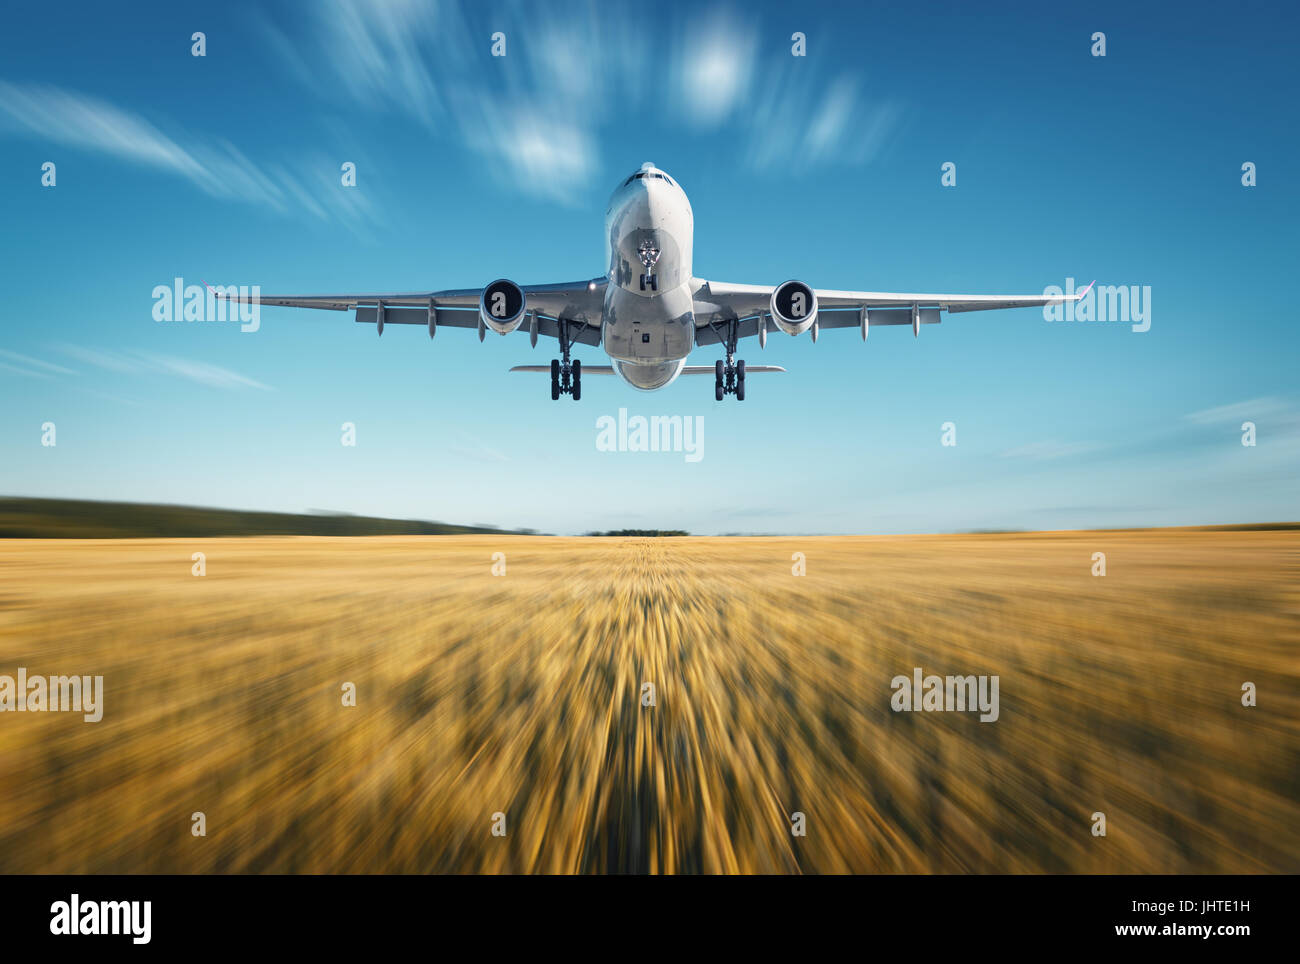 Flugzeug mit Motion-Blur-Effekt. Landschaft mit weißen Passagierflugzeug fliegt, blauer Himmel, Weizenfeld bei Sonnenuntergang im Sommer. Passagierflugzeug Stockfoto